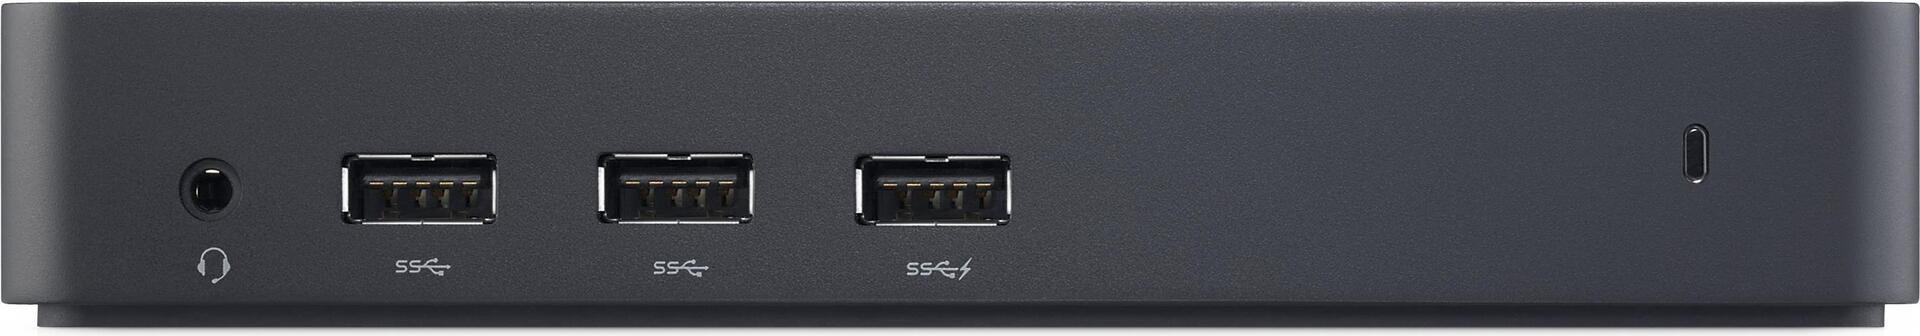 DELL USB 3.0-Dockingstation D3100 (DELL-D3100)